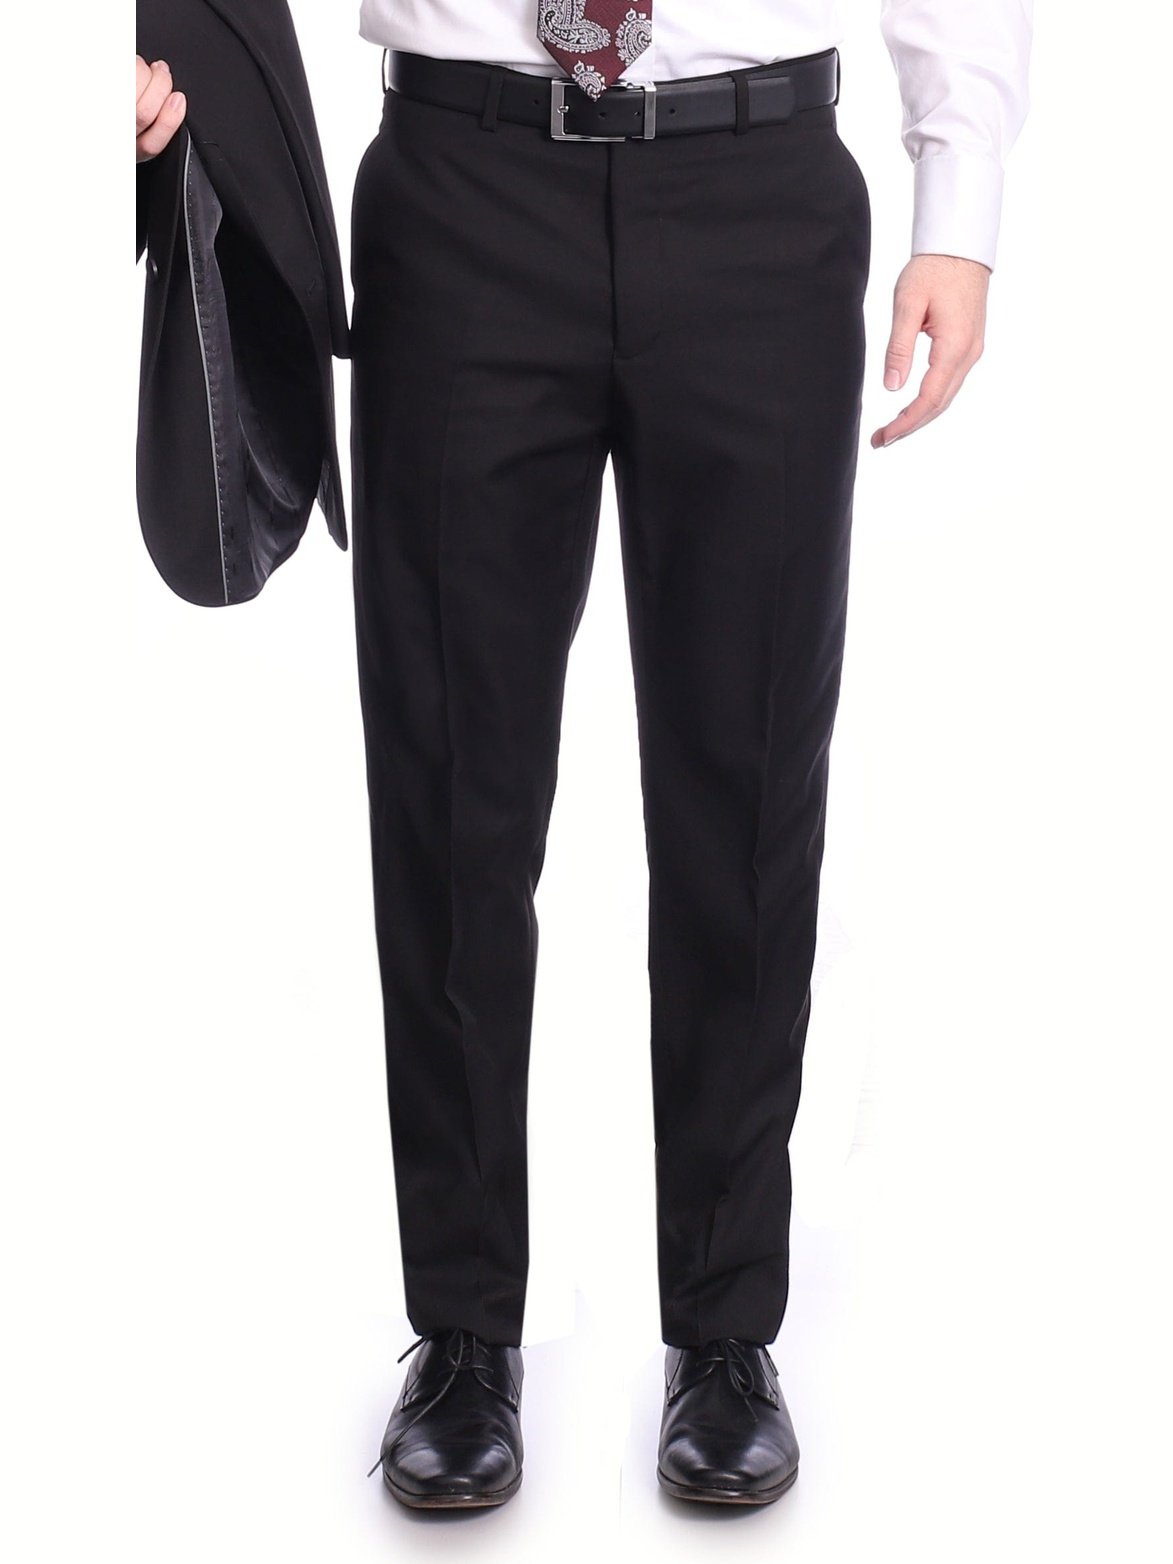 Raphael PANTS Raphael Classic Fit Solid Black Flat Front Washable Prehemmed Dress Pants